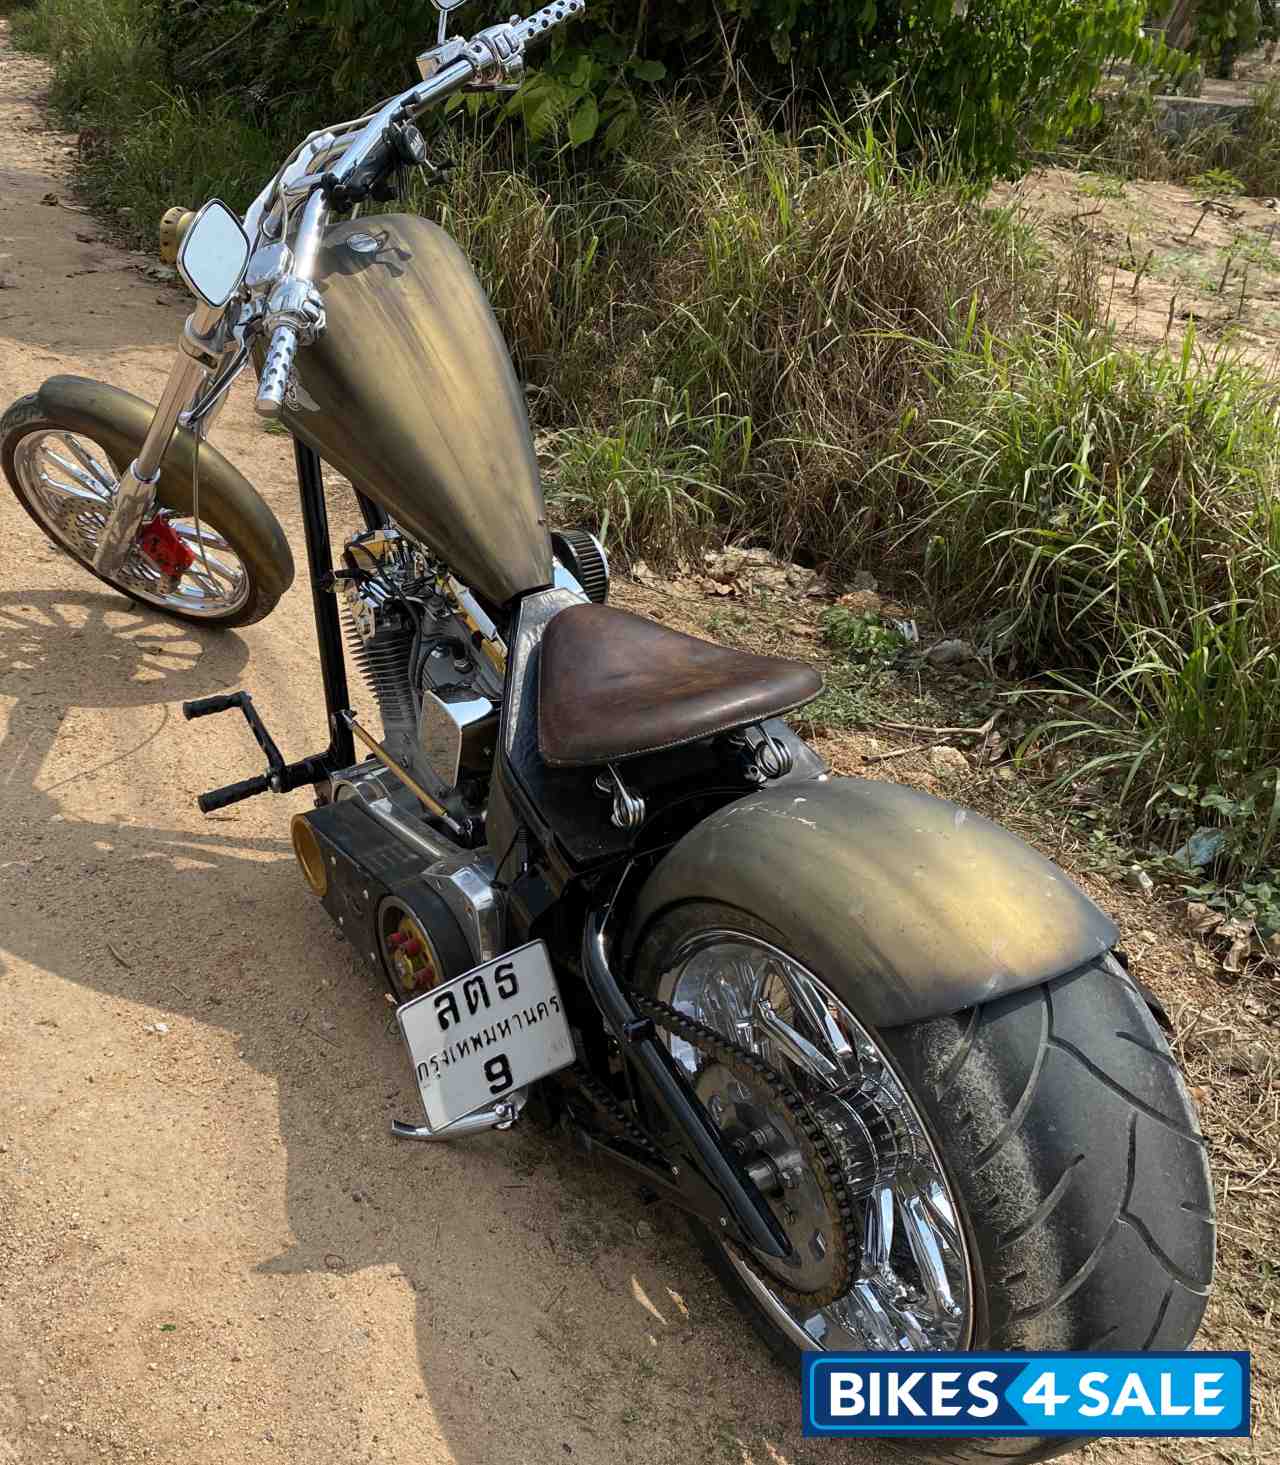 Harley Davidson Softail Custom Chopper